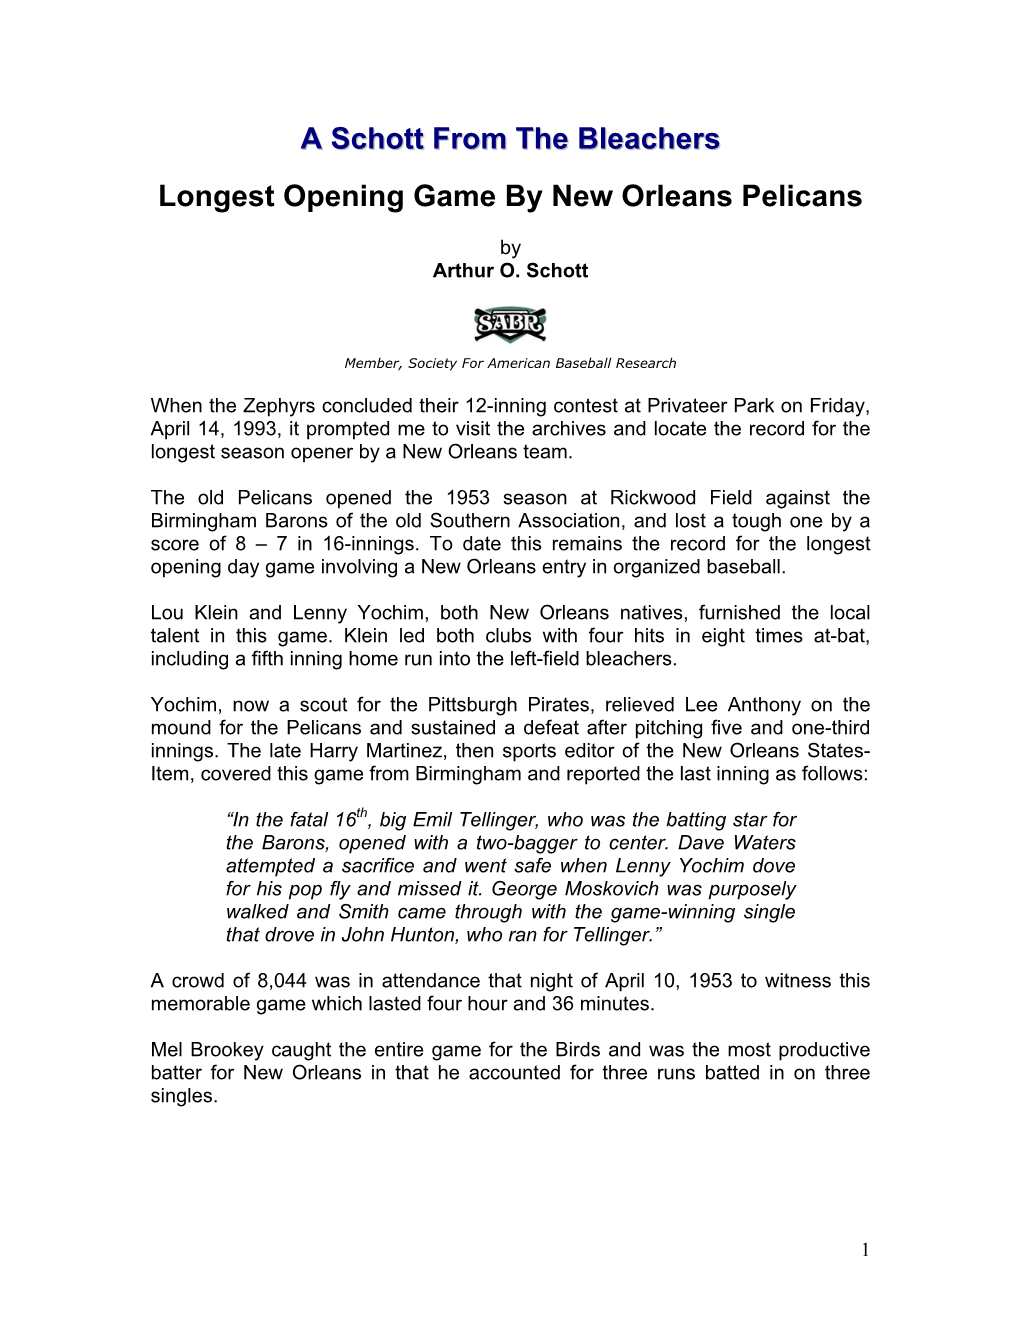 Pelicans' Longest Opening